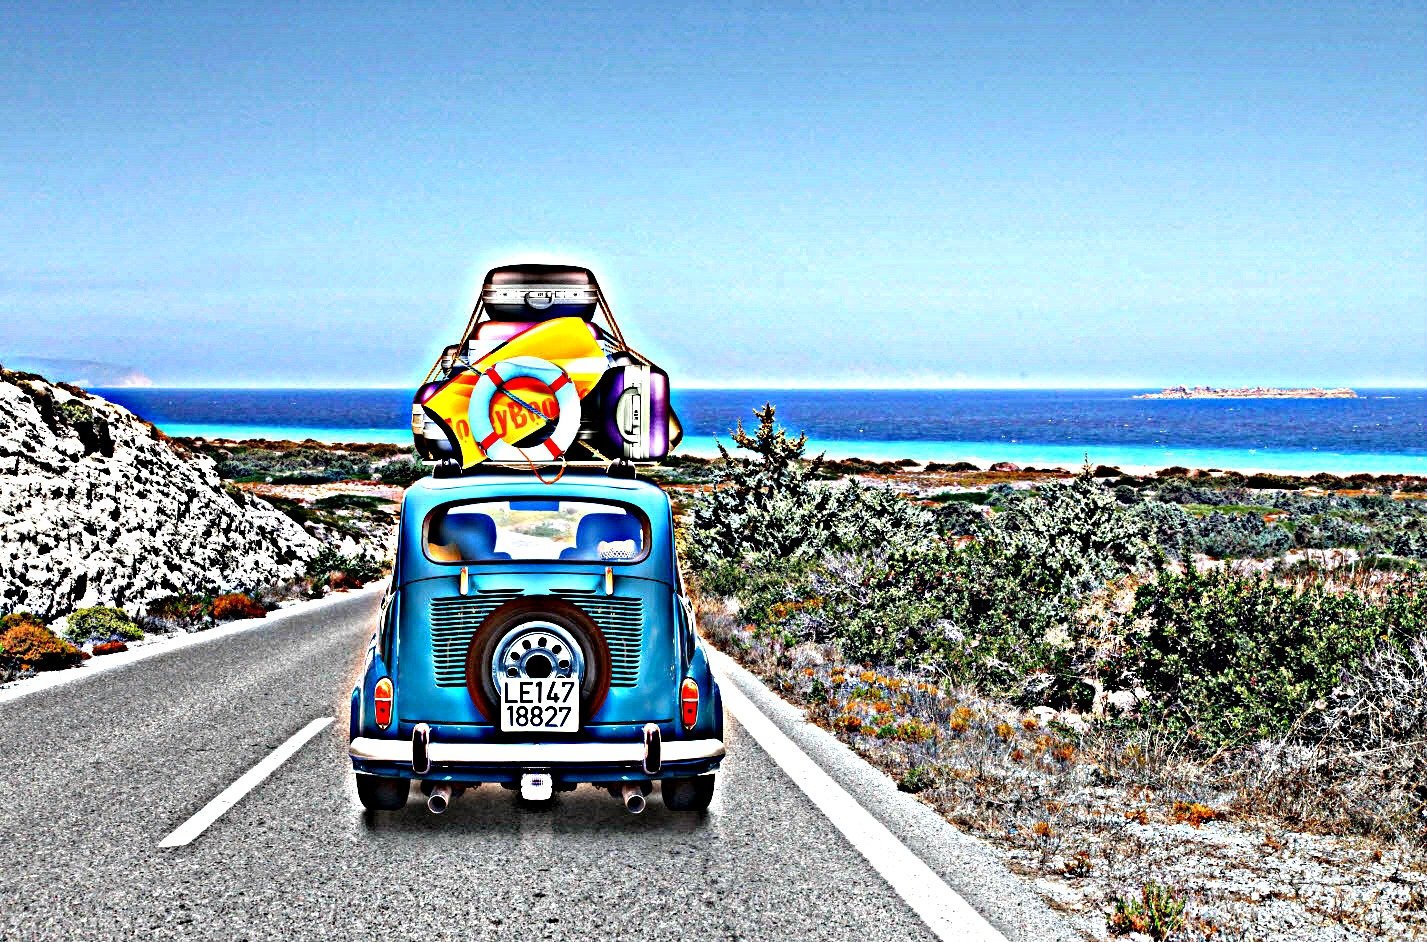 4 φίλοι, 1 αμάξι, 4.500 χλμ, 62 πόλεις… Ο γύρος της Ελλάδας σε 13 μέρες!